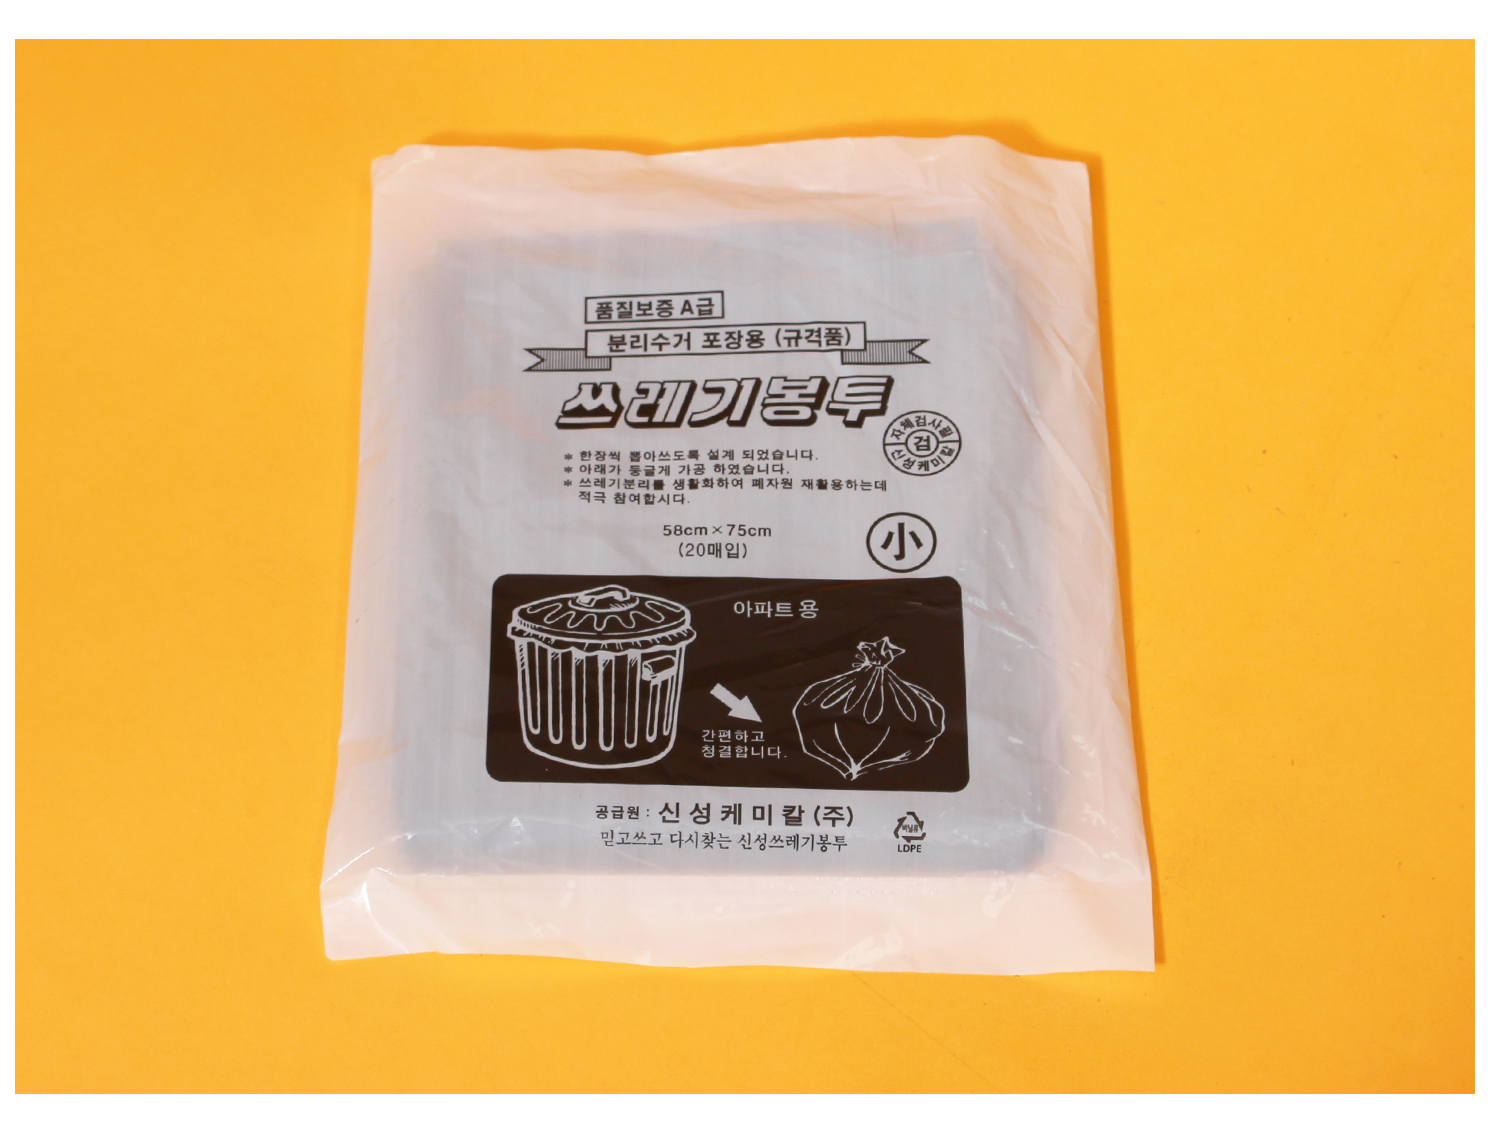 주황색 바탕화면에 쓰레기봉투가 소분 봉투에 담겨있다. 소분 봉투에는 쓰레기봉투의 사이즈 및 수량이 적혀있다.